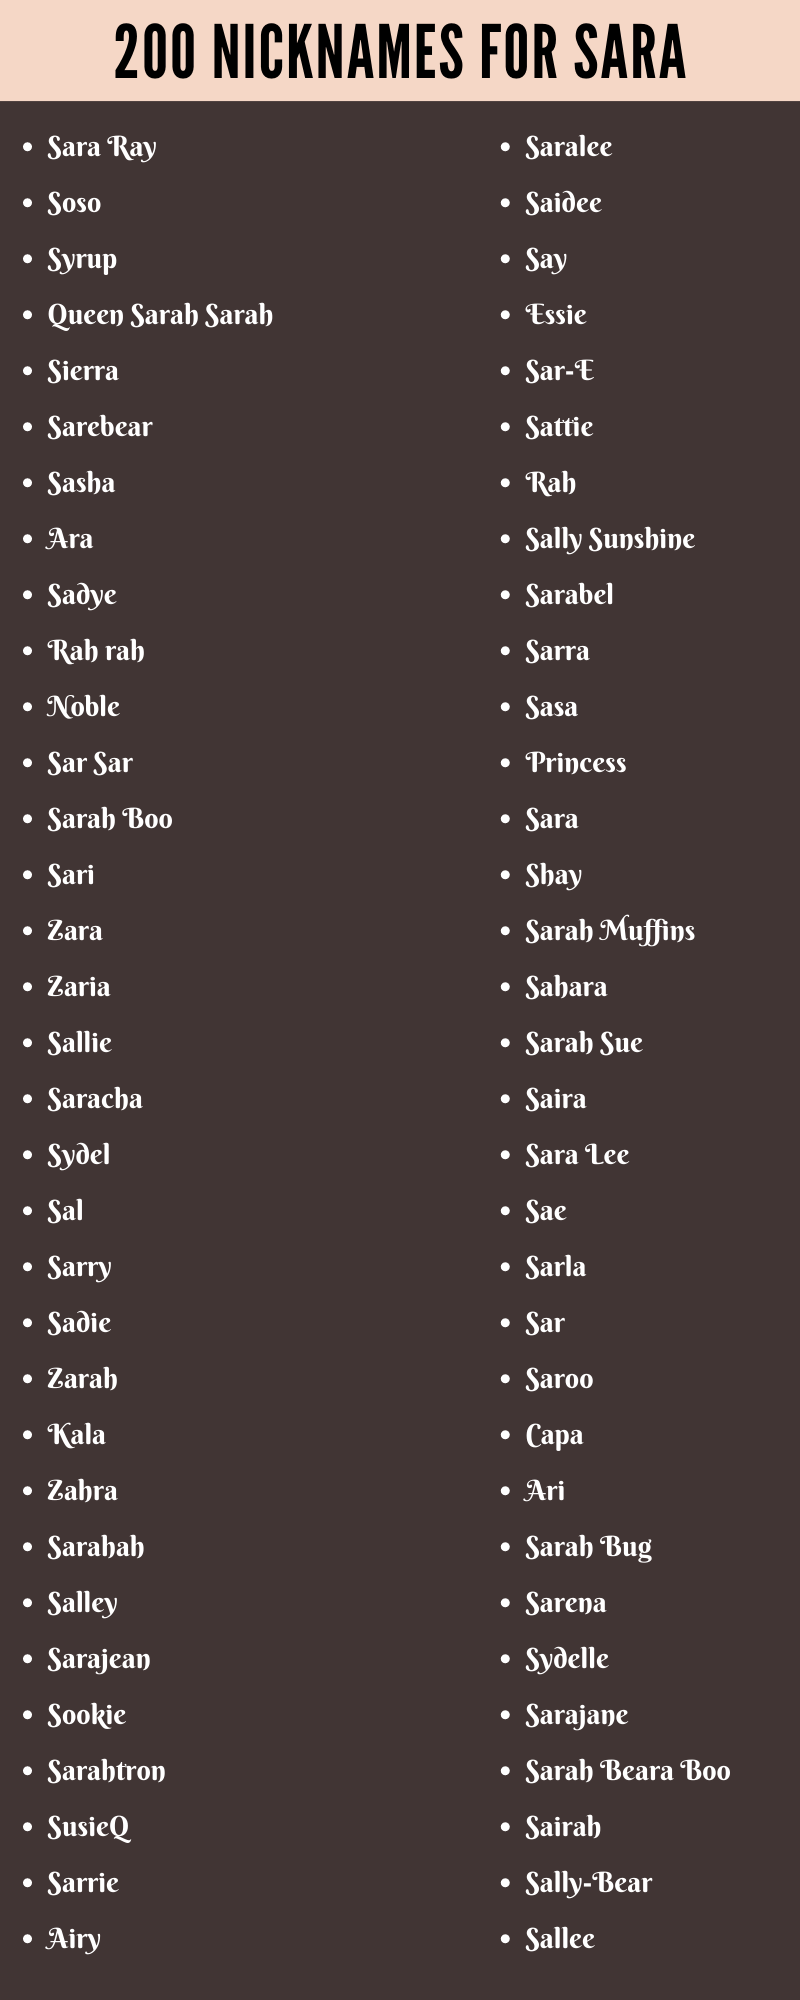  nicknames for sara